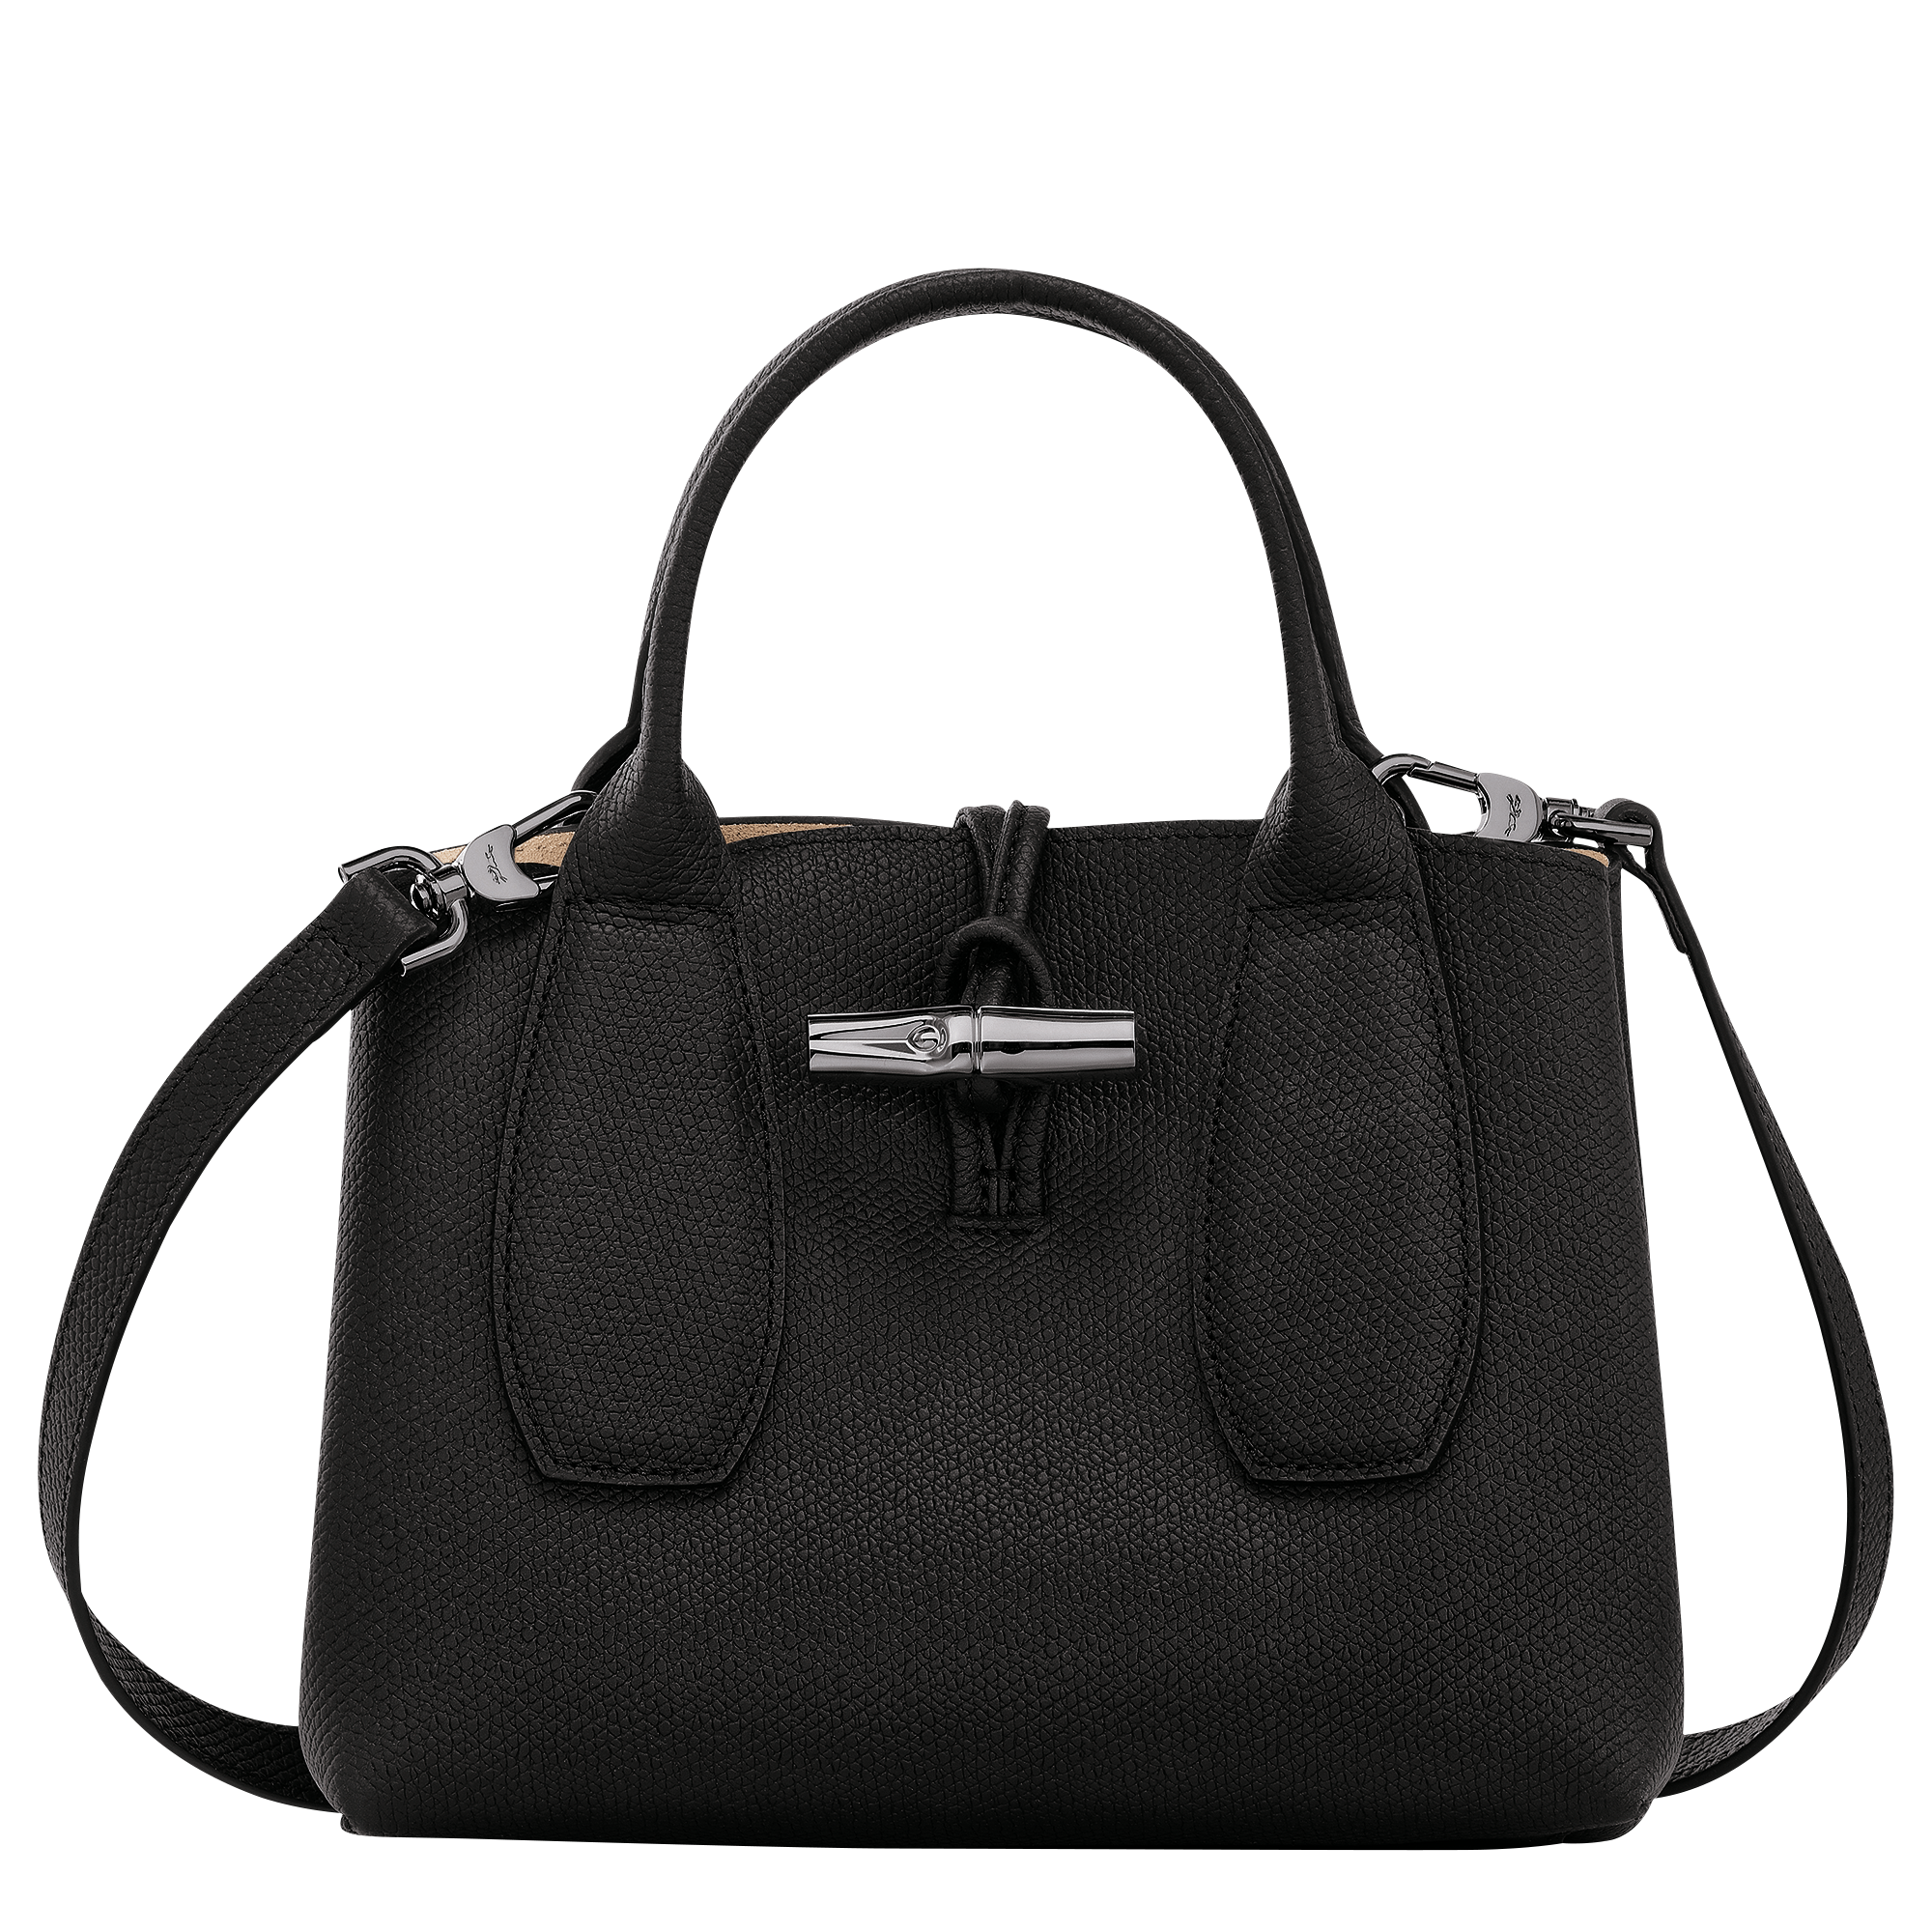 Longchamp Roseau Top-Handle Bag S Natural